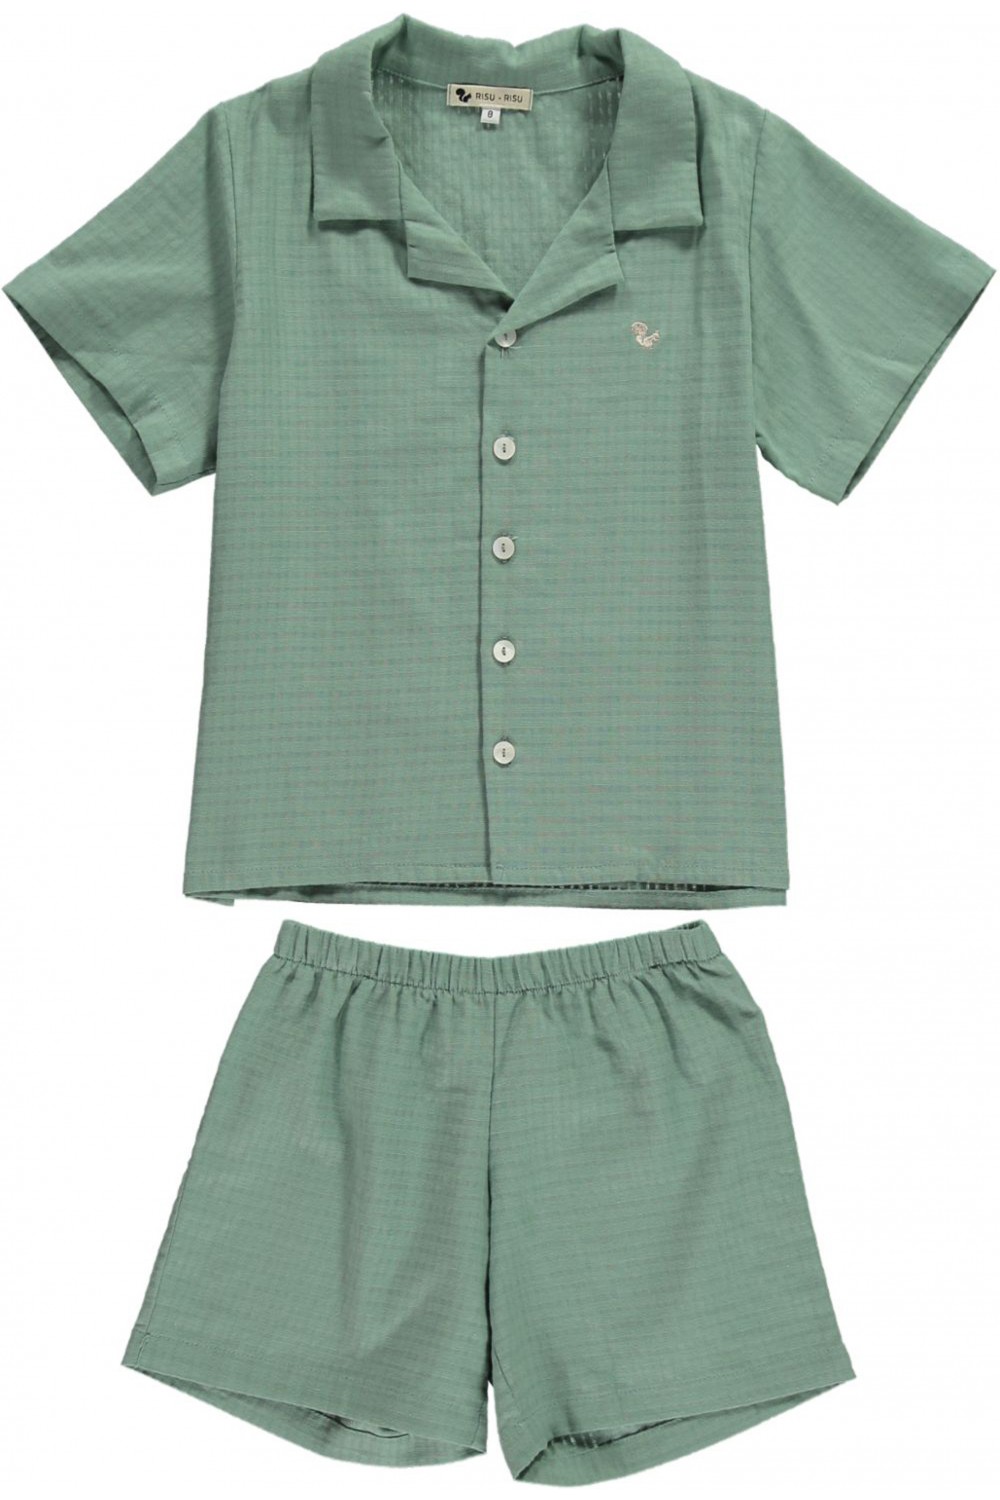 Rieur summer green boy's pyjamas